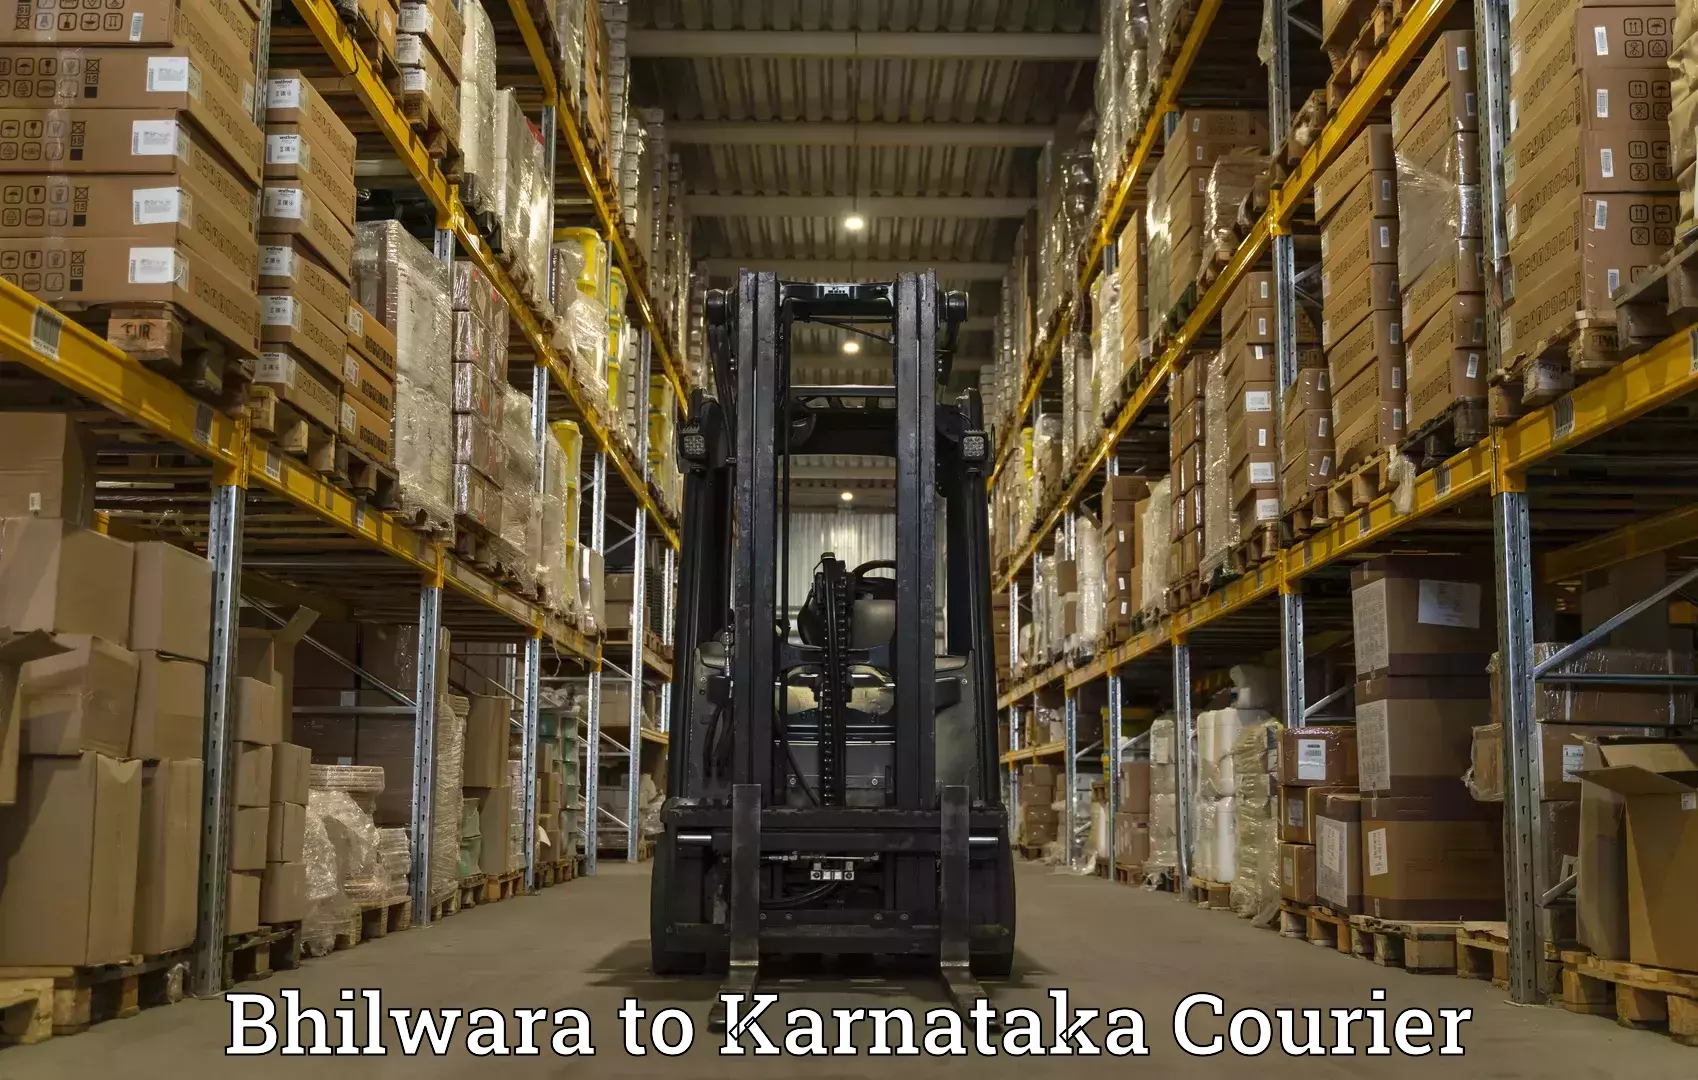 Global parcel delivery Bhilwara to Bagaluru